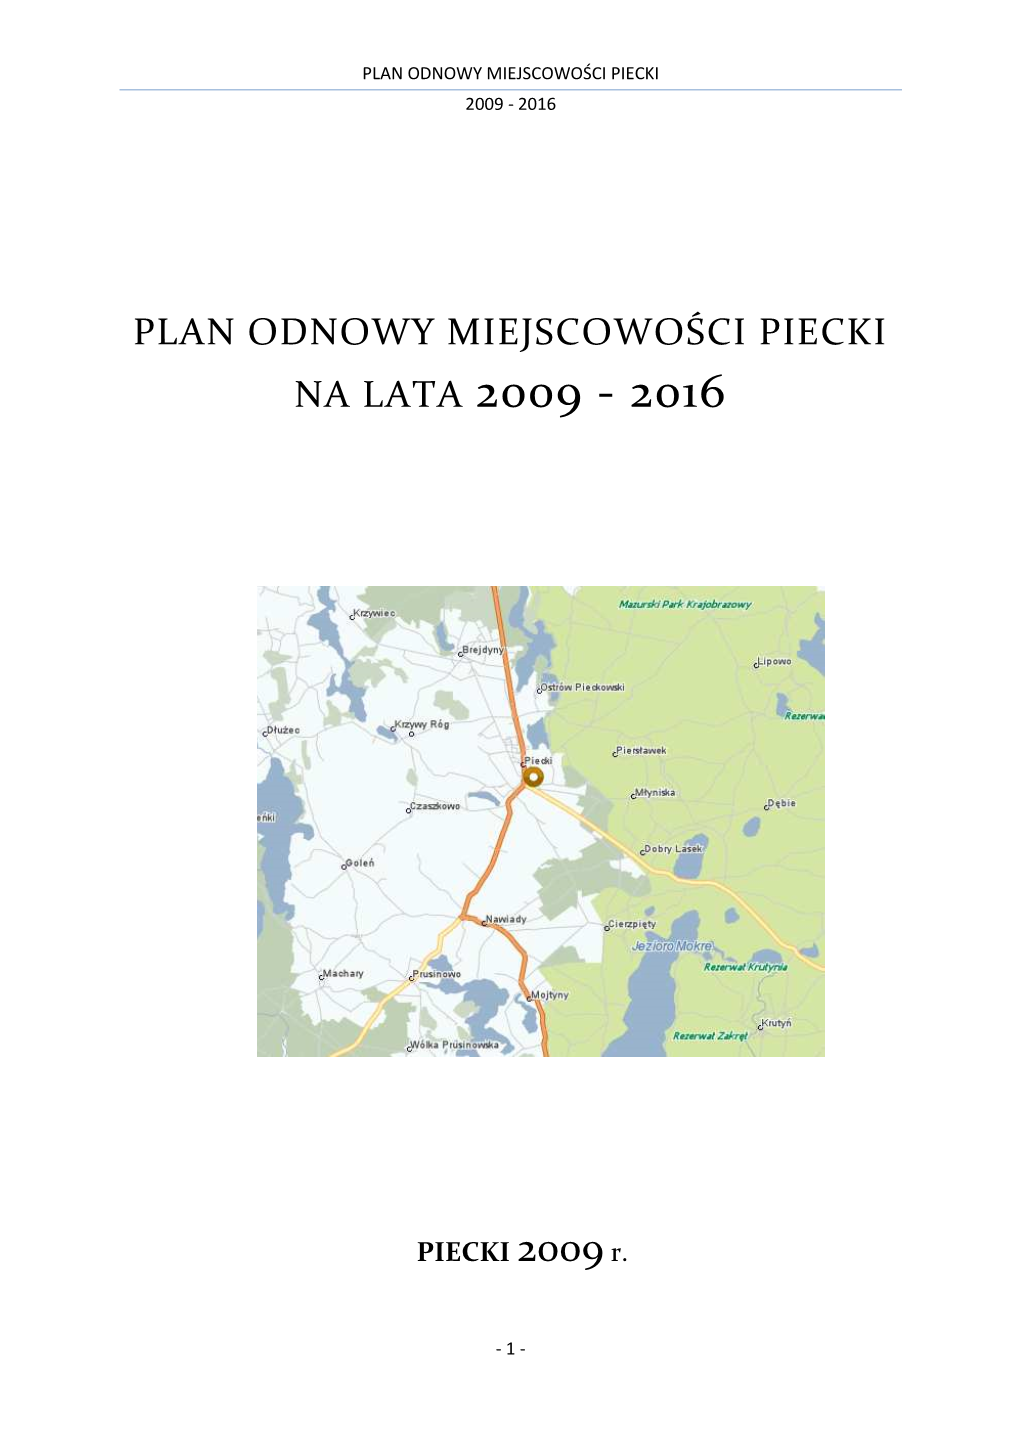 Plan Odnowy Miejscowosci Piecki